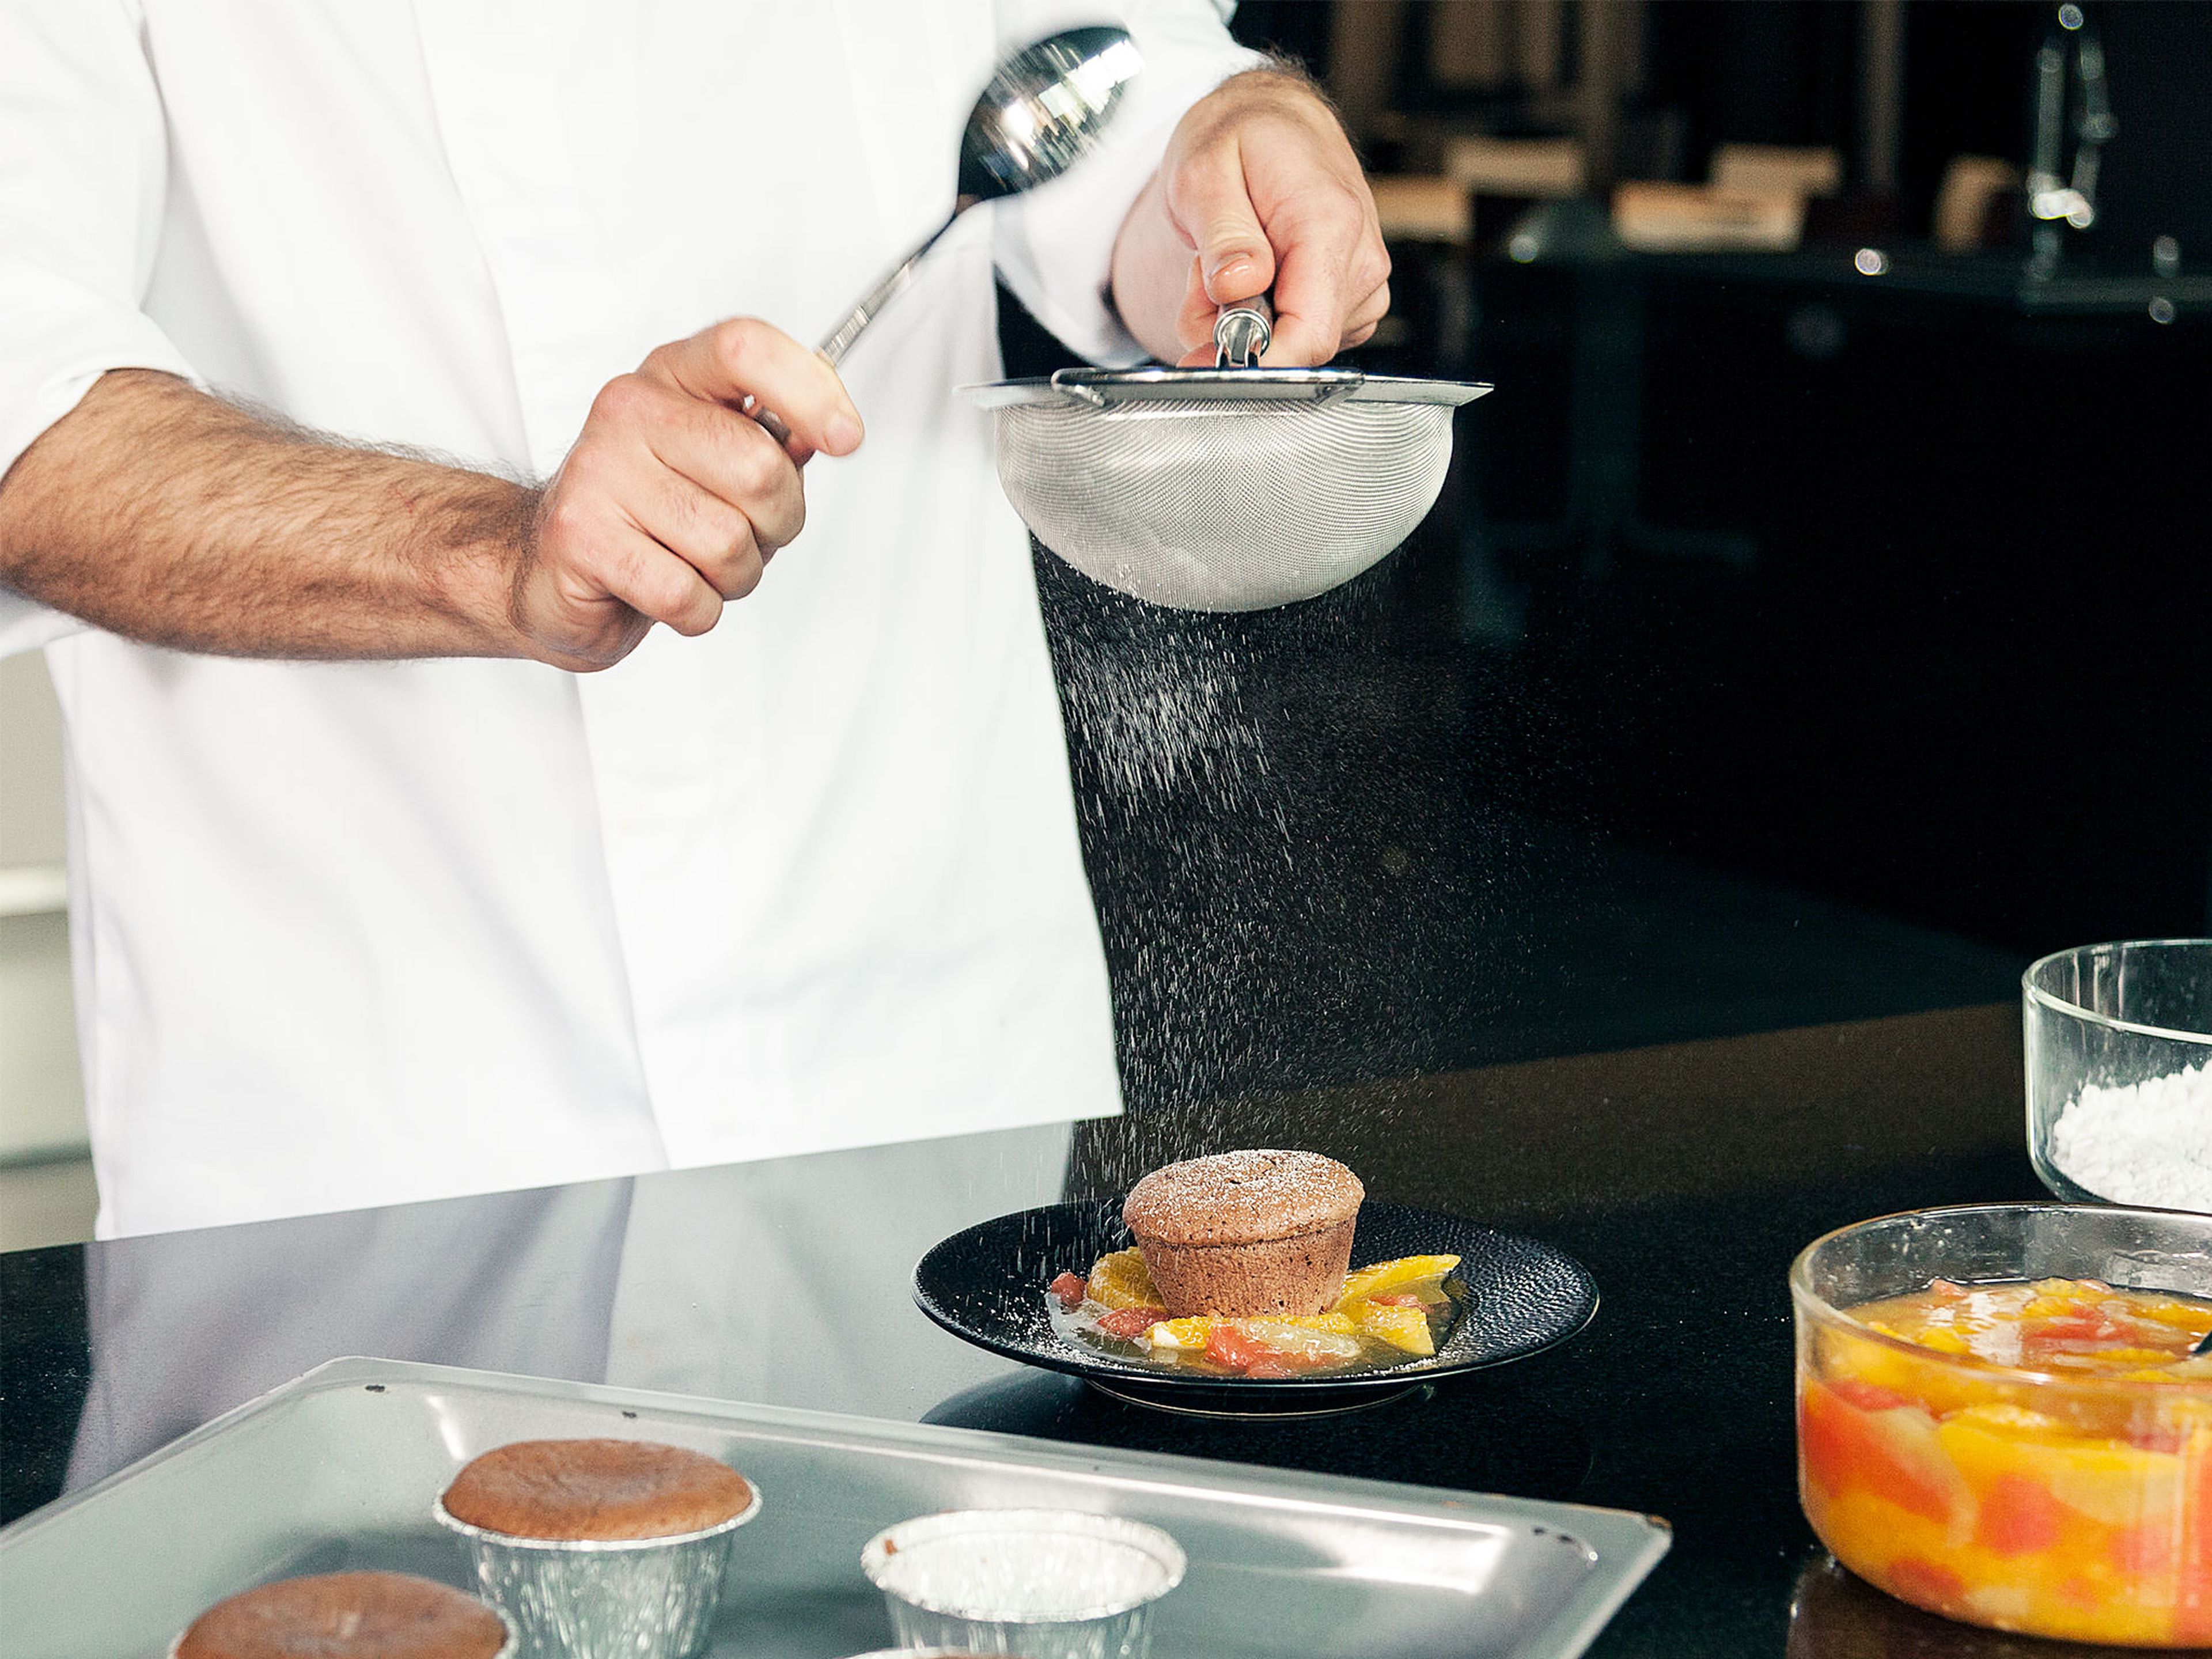 Zitrusfruchtsalat auf Tellern verteilen und Schokoküchlein direkt daraufsetzen. Mit Puderzucker bestäuben und servieren. Guten Appetit!